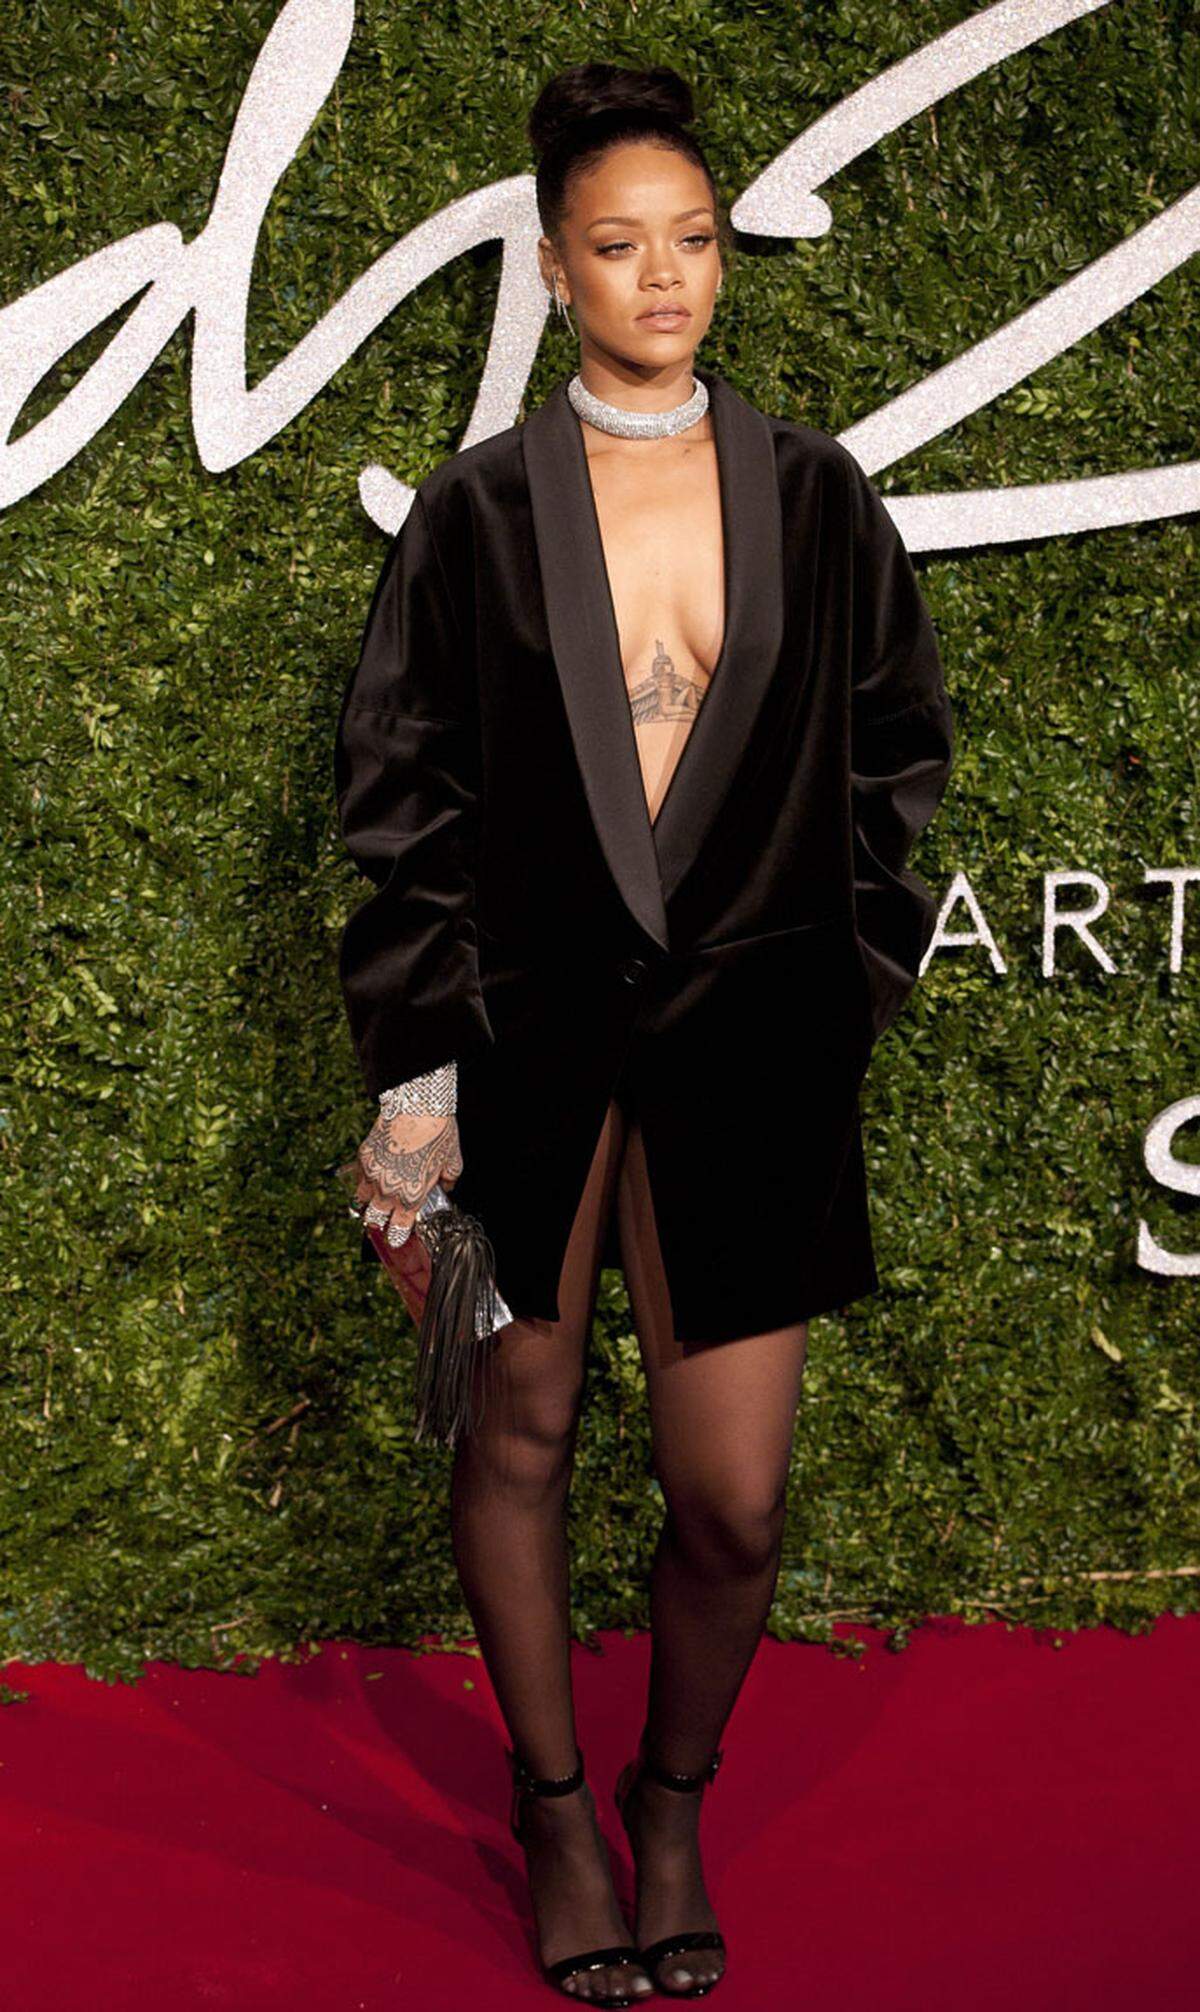 Hoch her ging es auf dem roten Teppich der British Fashion Awards. Ihr Stilgefühl wollten Stars wie Rihanna, die lediglich einen Mantel von Stella McCartney trug, unter Beweis stellen.